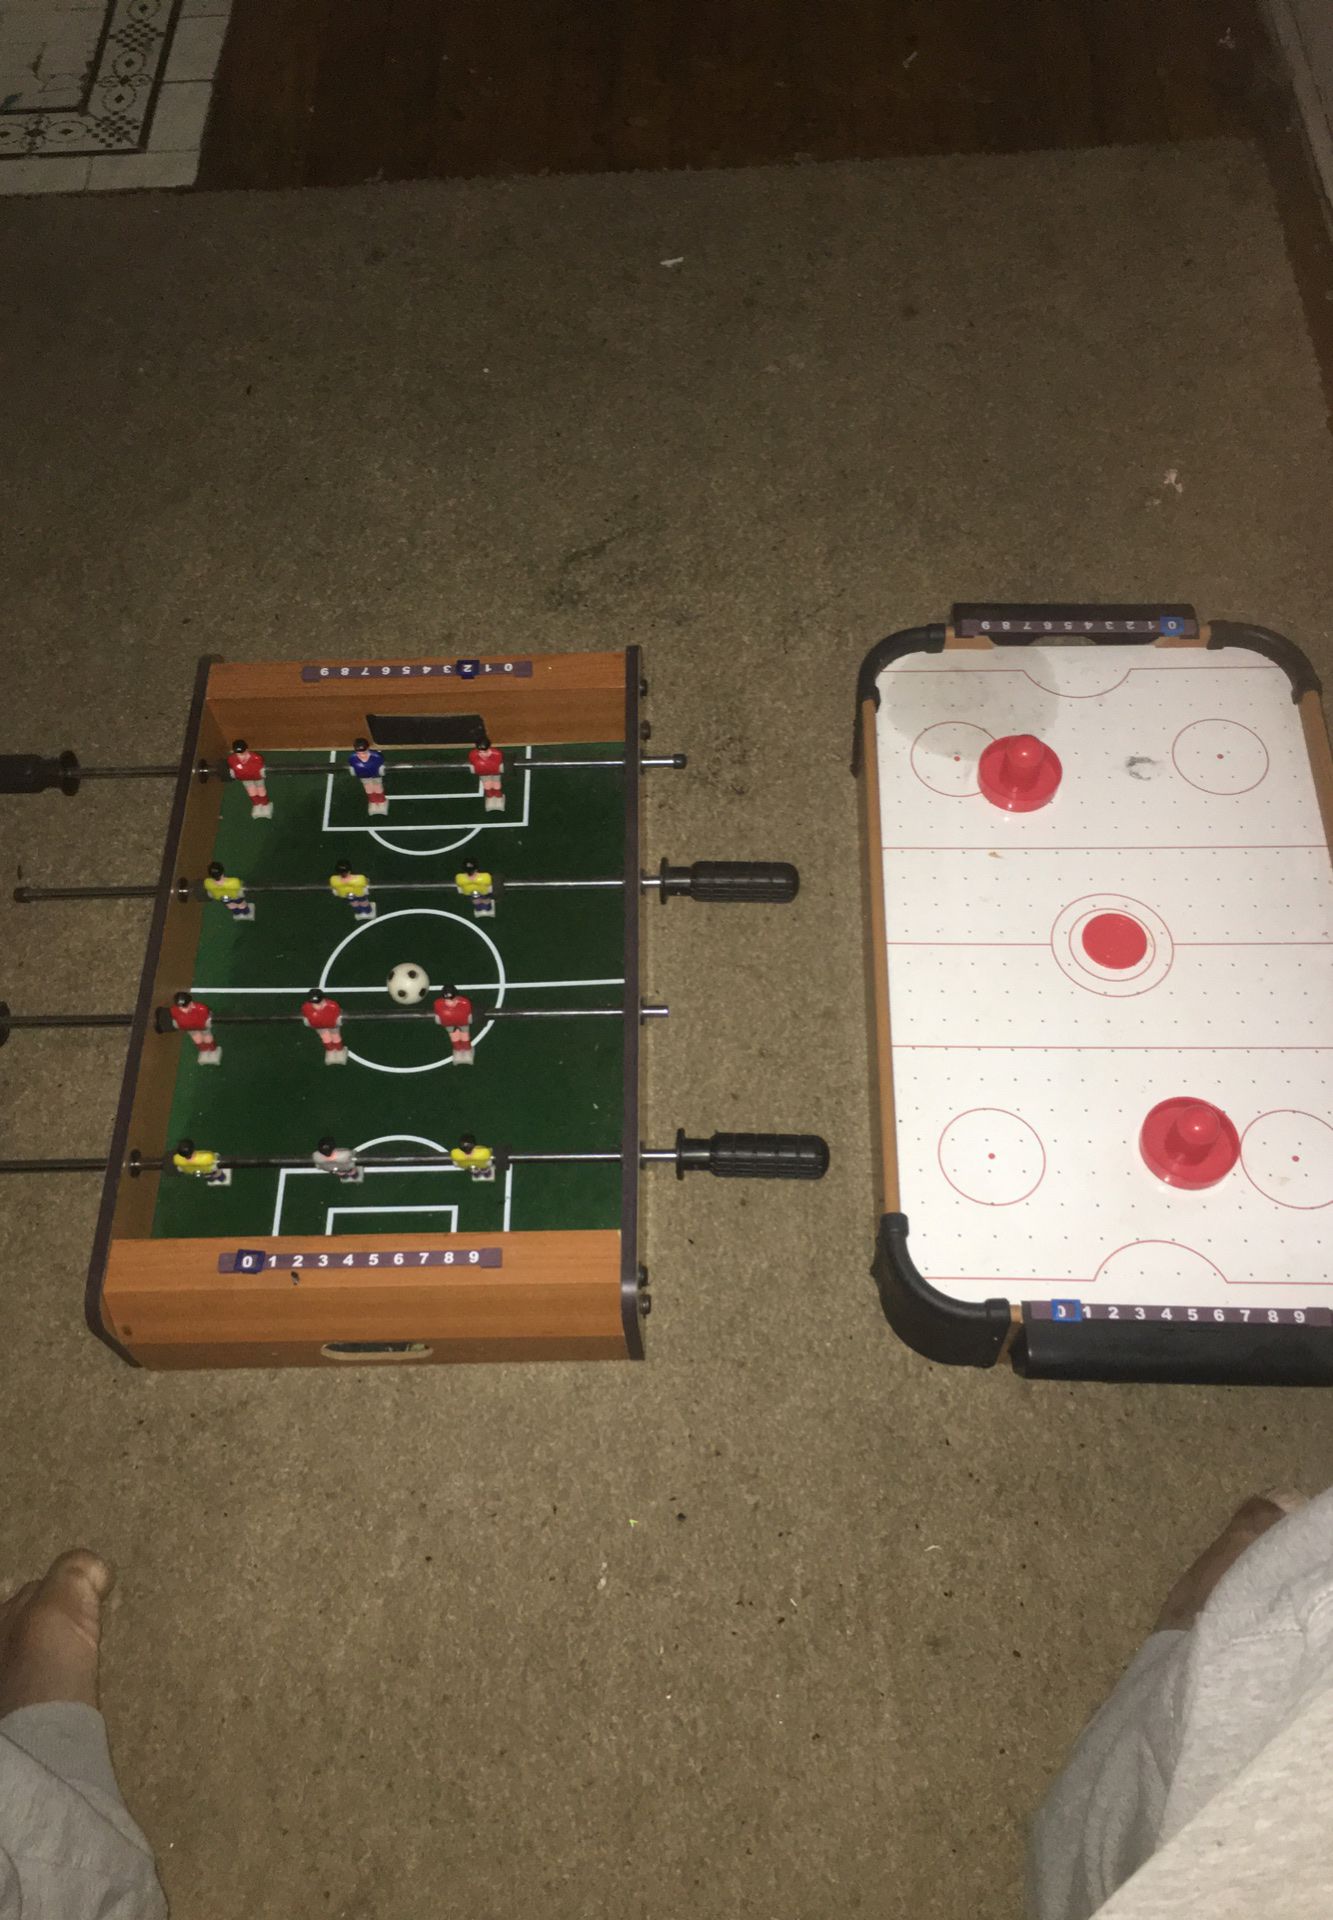 Foozball table & air hockey table